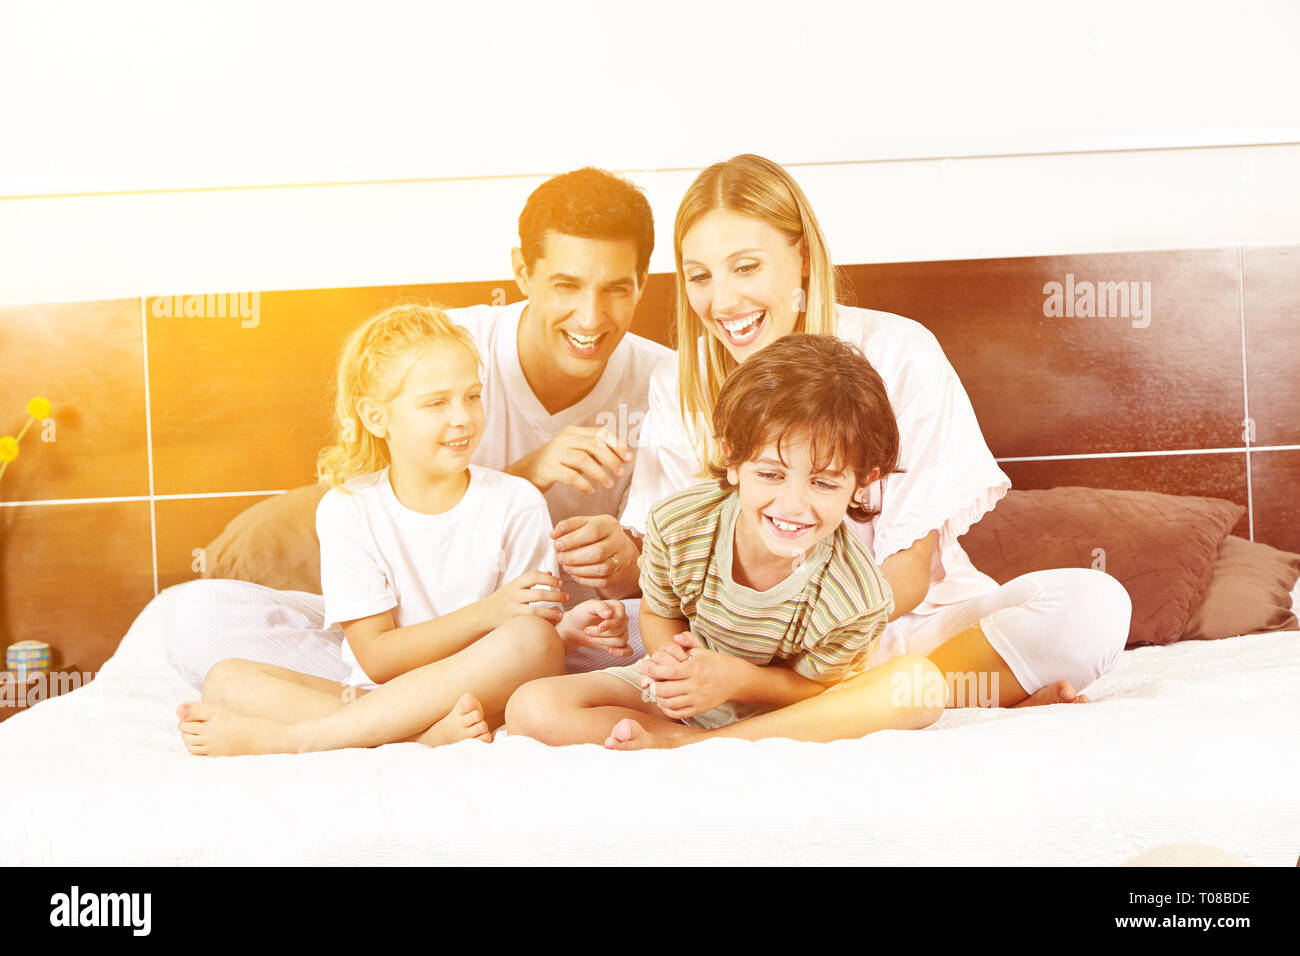 Lachend Familie sitzt im Bett mit zwei Kindern und Kitzeln einander Stockfoto